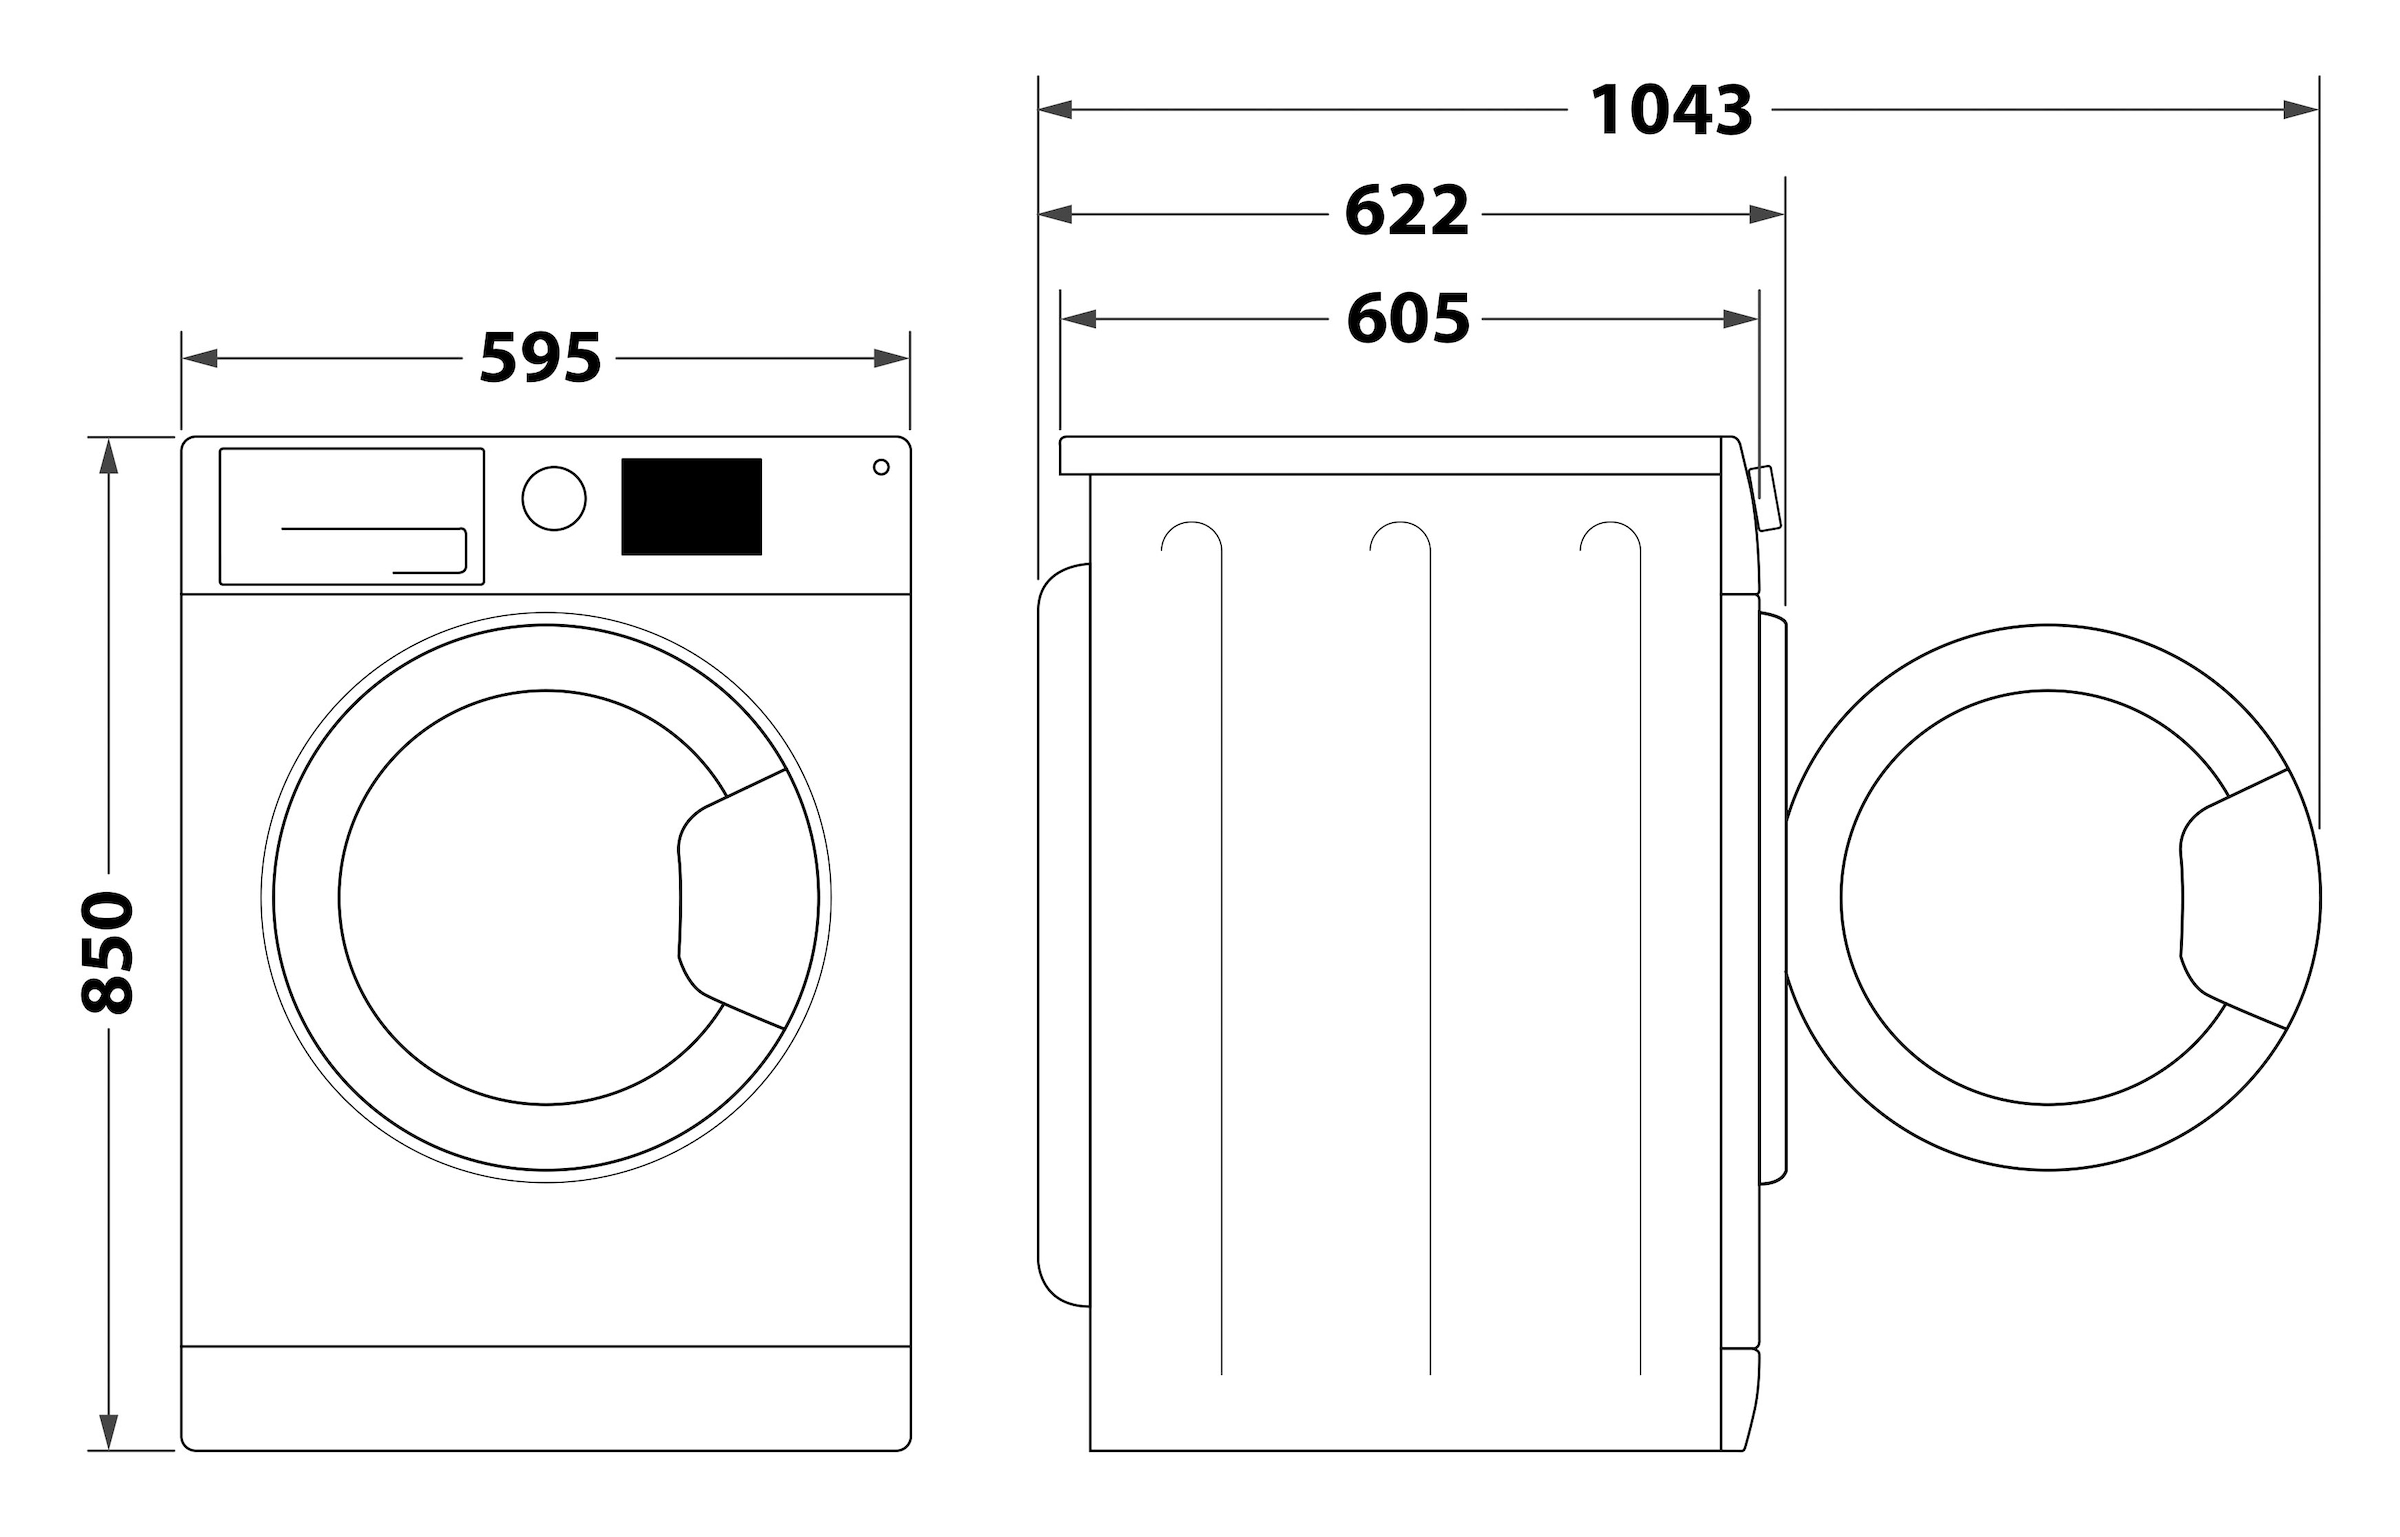 BAUKNECHT Waschmaschine »WM BB 814 A«, WM BB 814 A, 8 kg, 1400 U/min